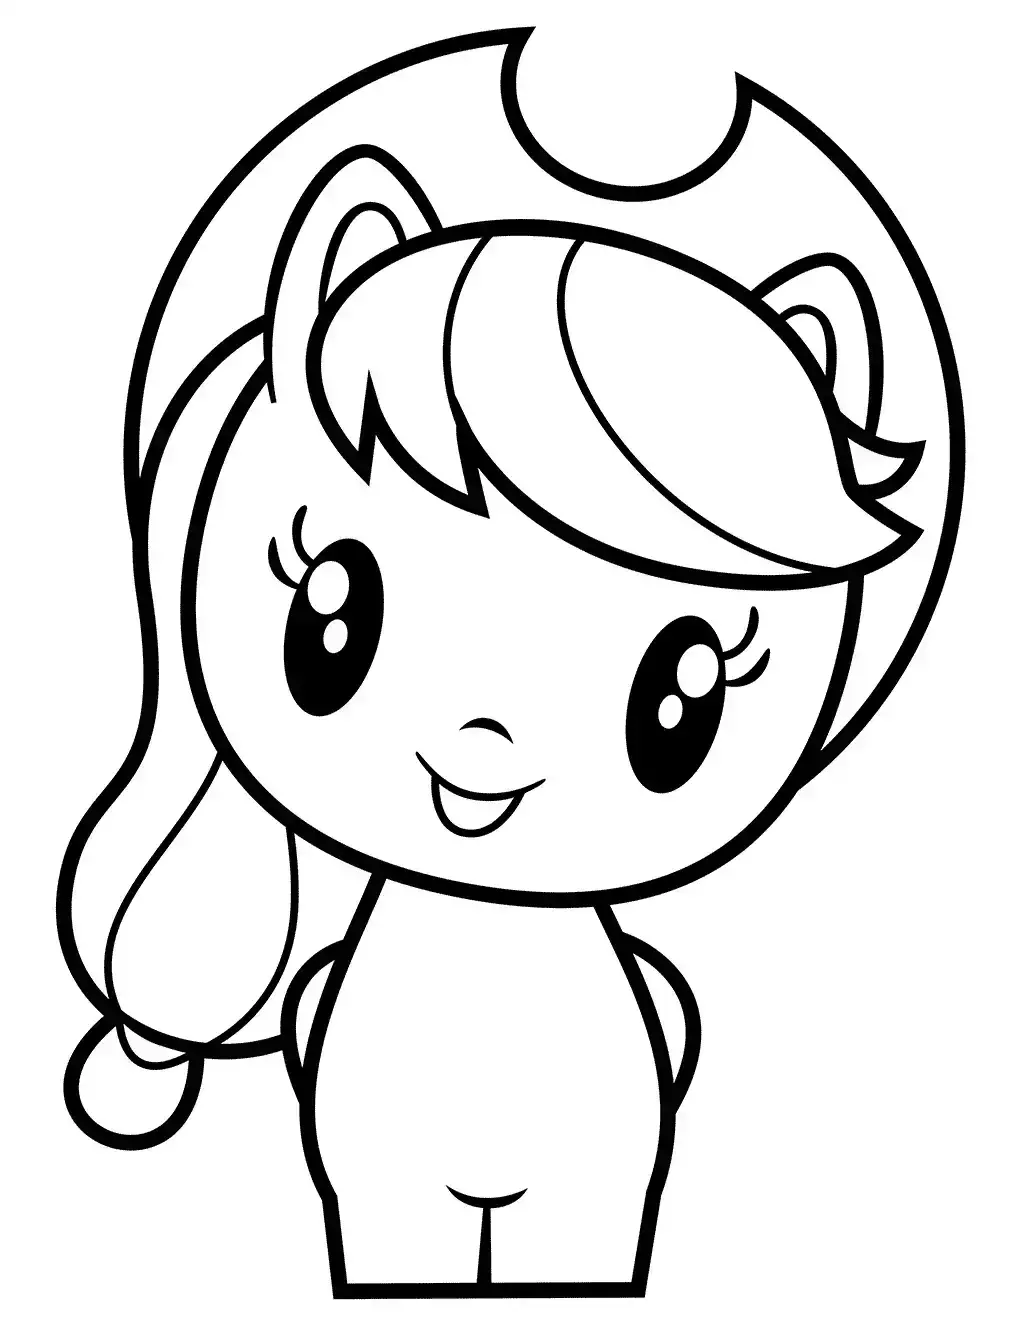 Dibujo de Cutie Applejack para imprimir gratis para colorear